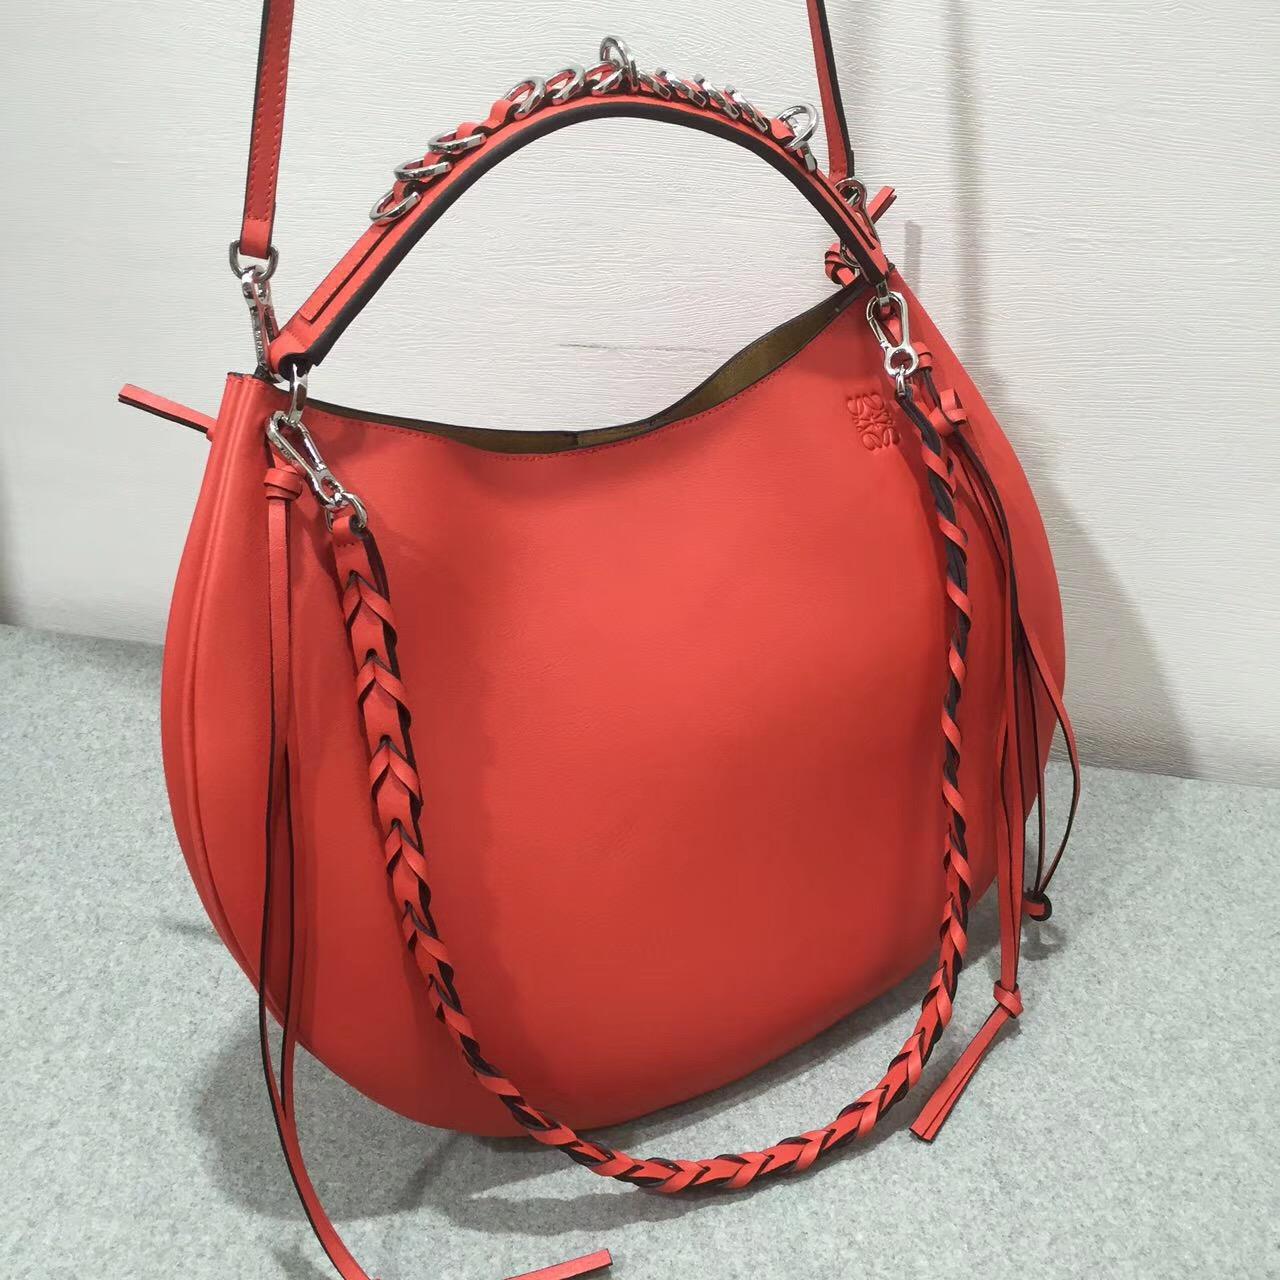 羅意威 Loewe Fortune hobo bag 系列限量版半月包红色 小牛皮 內襯鹿皮